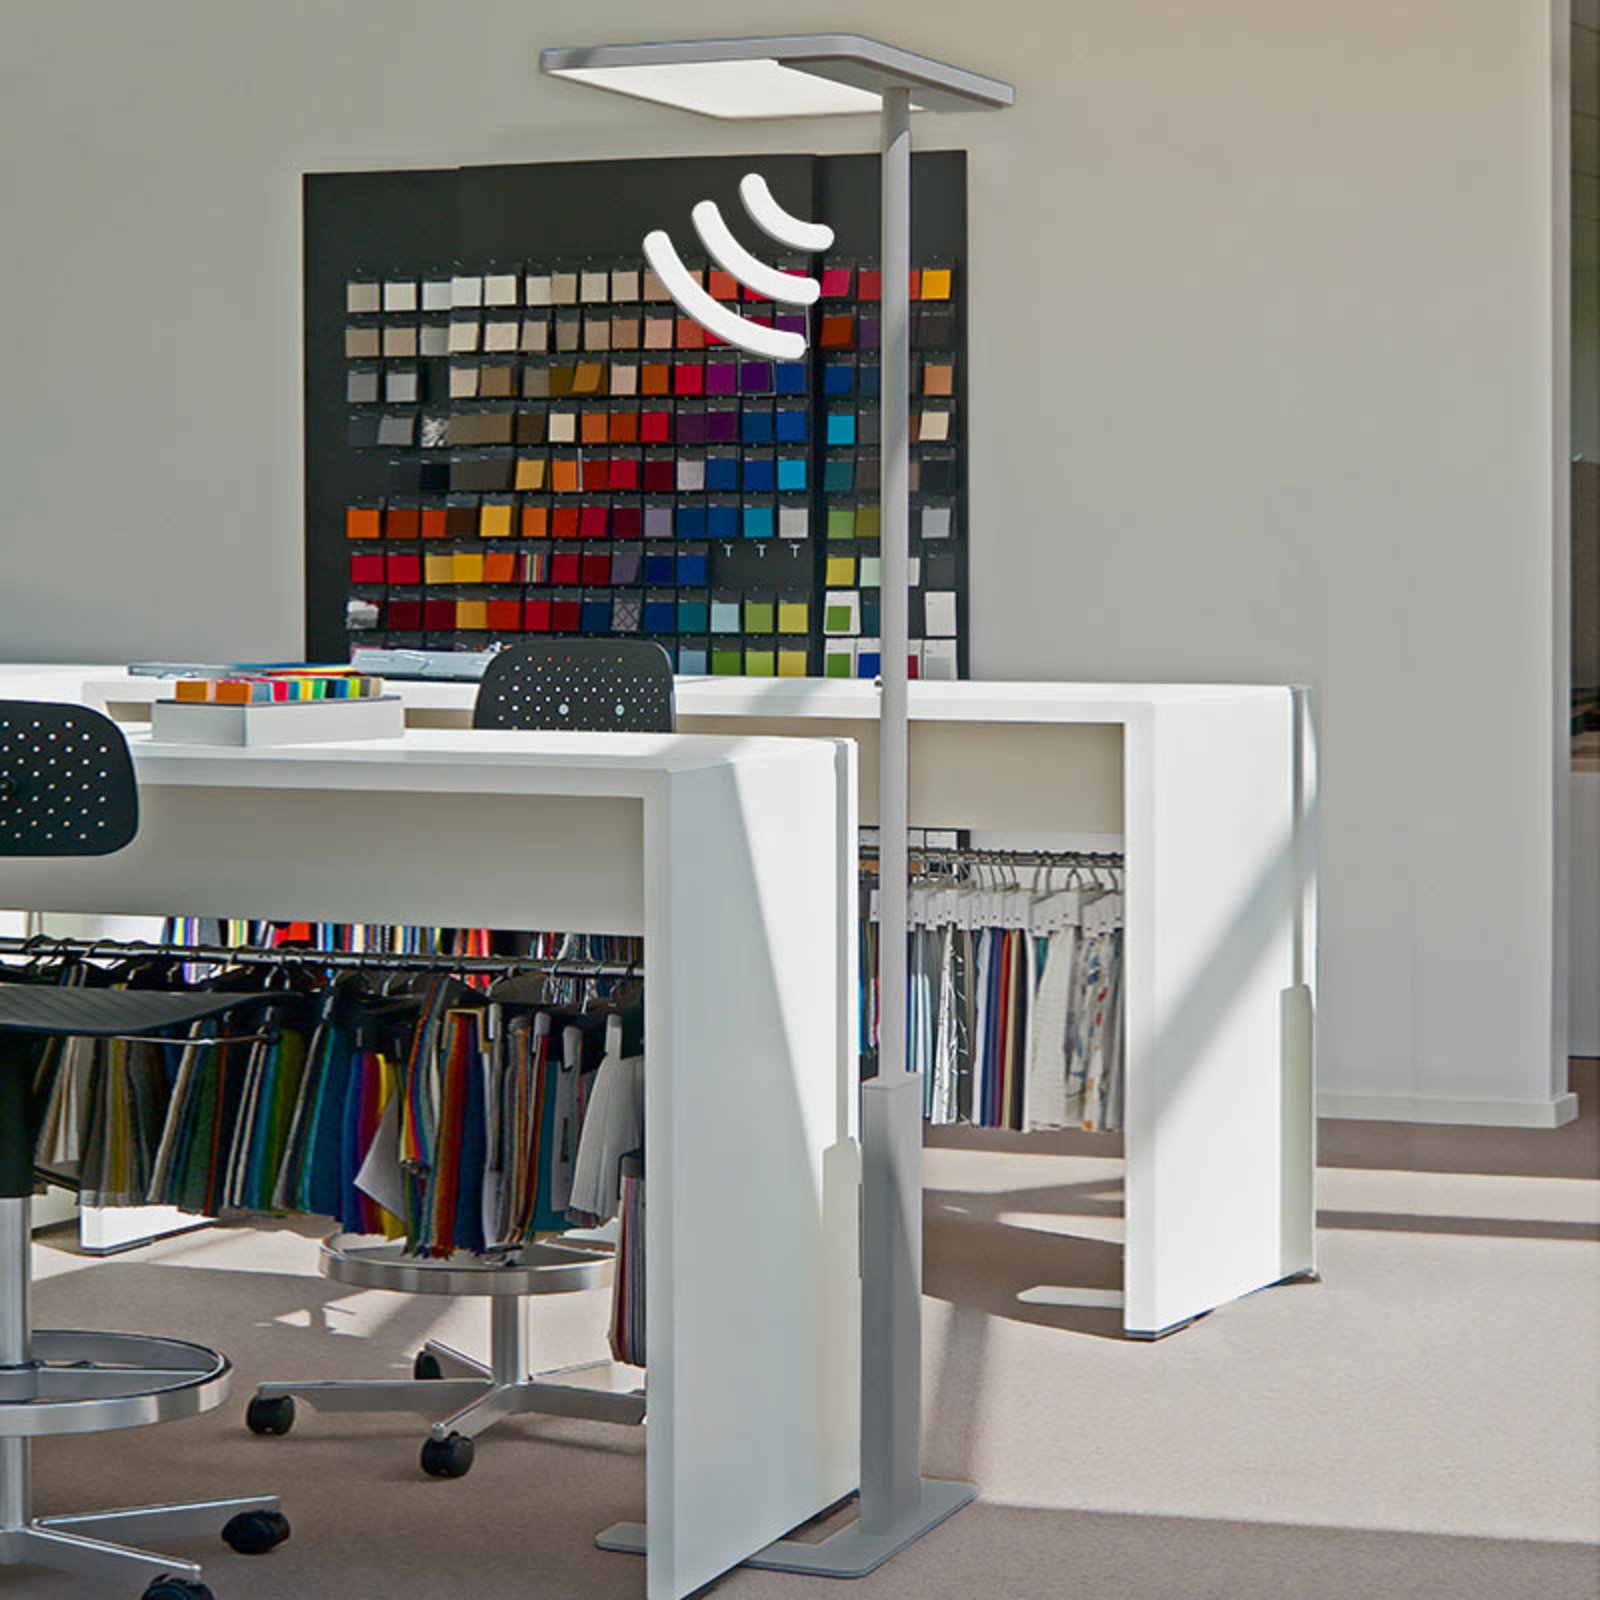 Офис подова лампа Linea-F със сензор в сиво